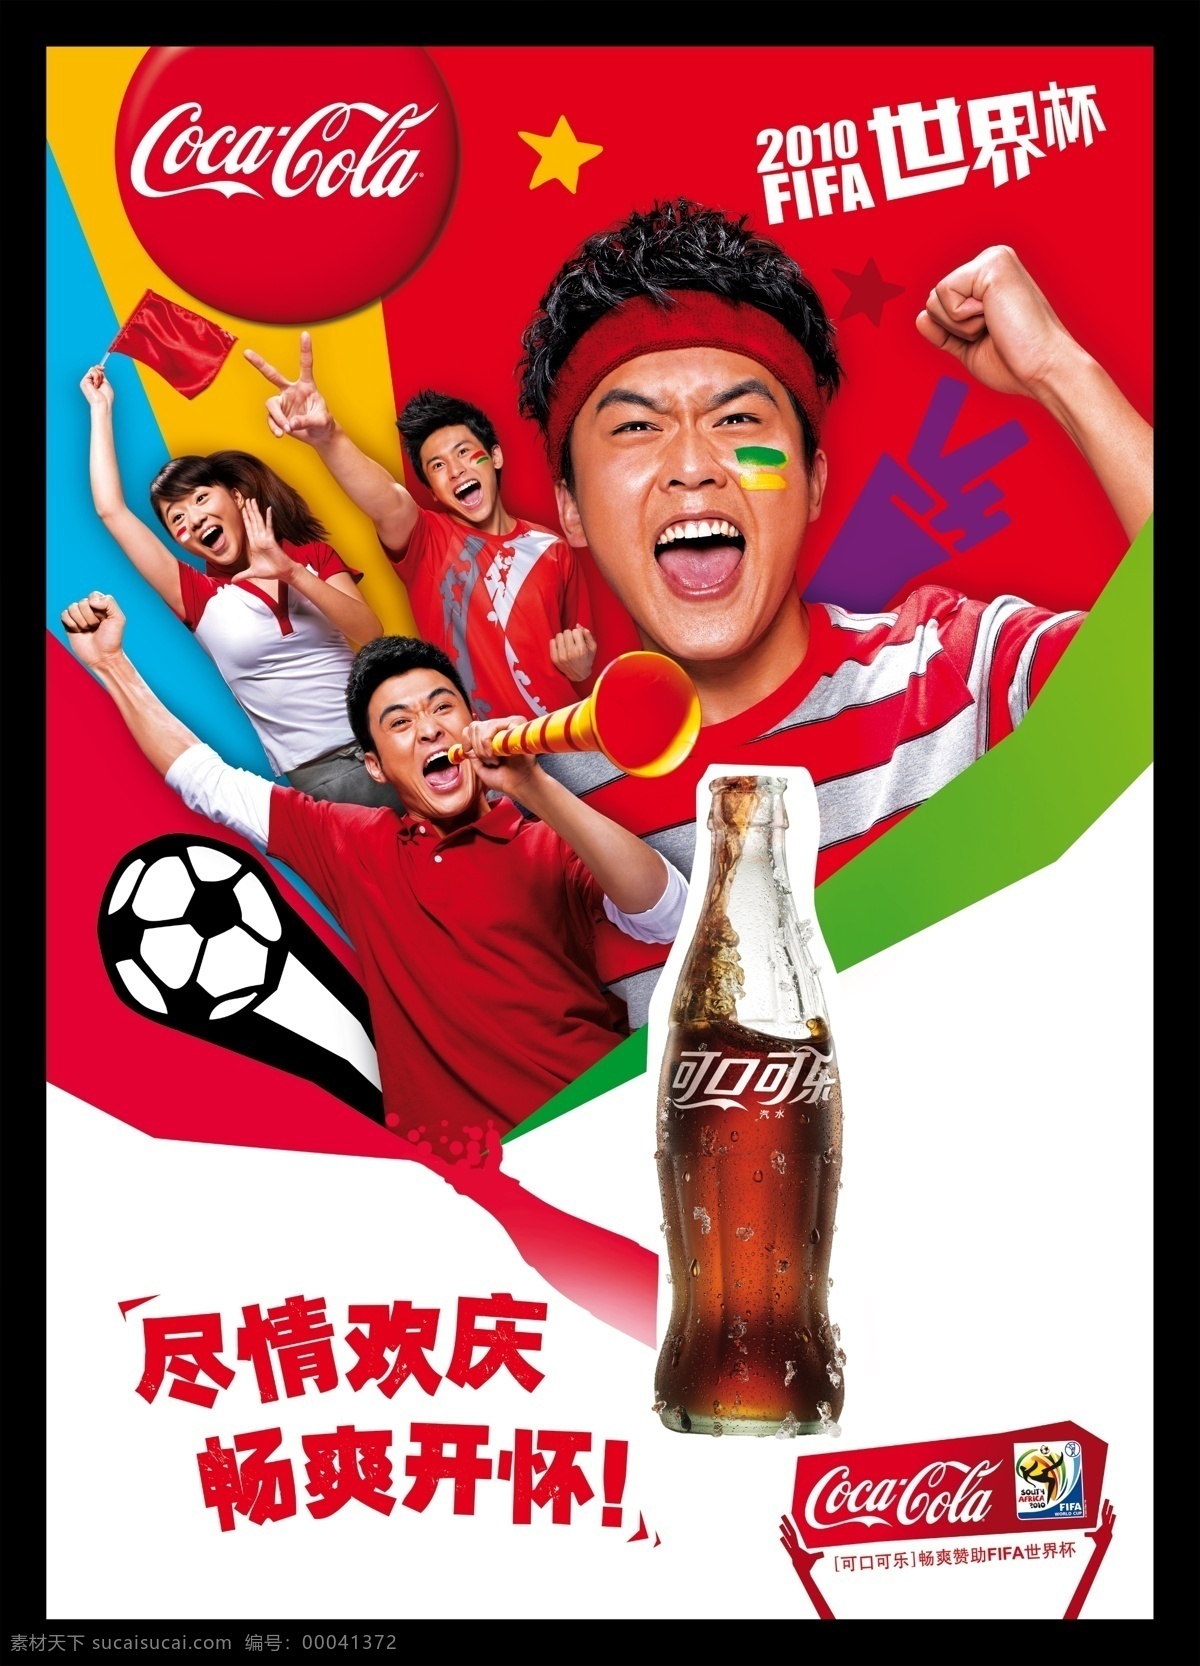 世界杯 海报 分层 电视 红色背景 激情 可乐 人物 世界杯海报 足球 体育 源文件 海报背景图